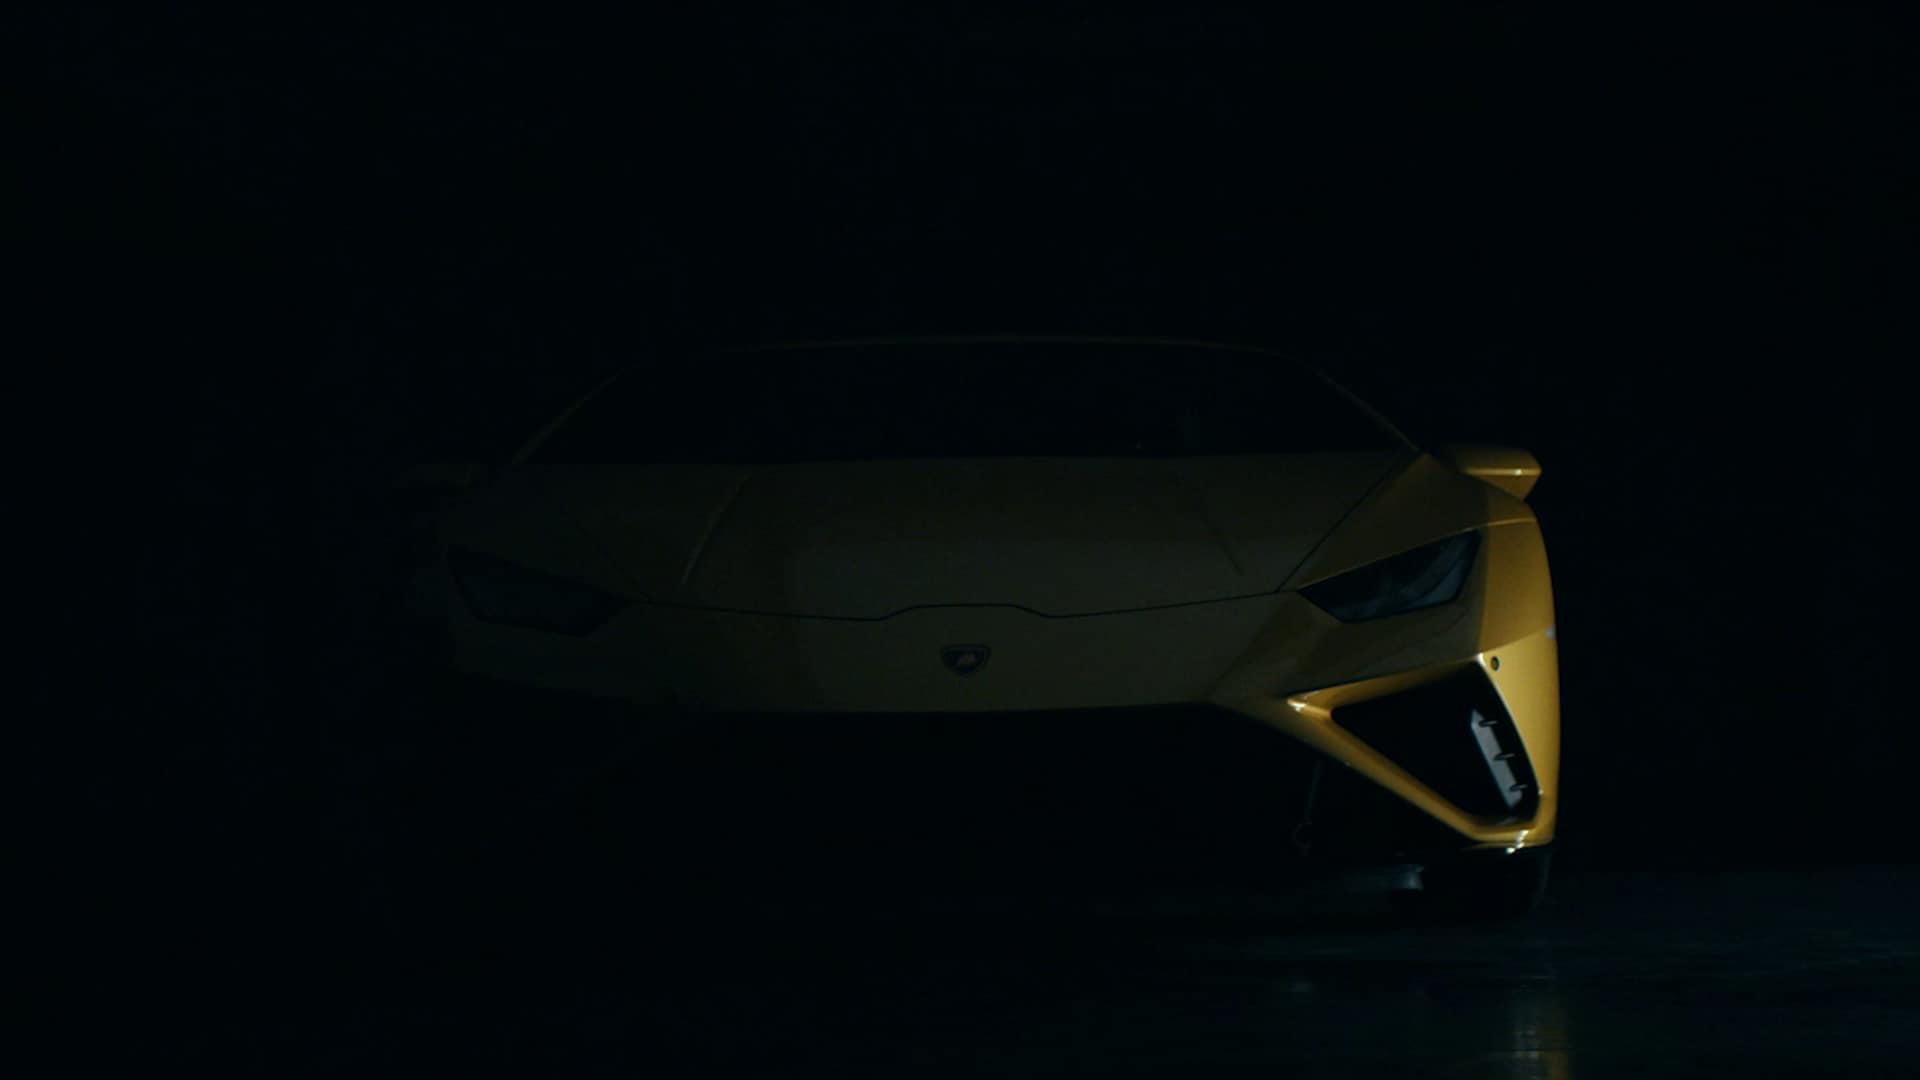 Lamborghini Huracán EVO RWD